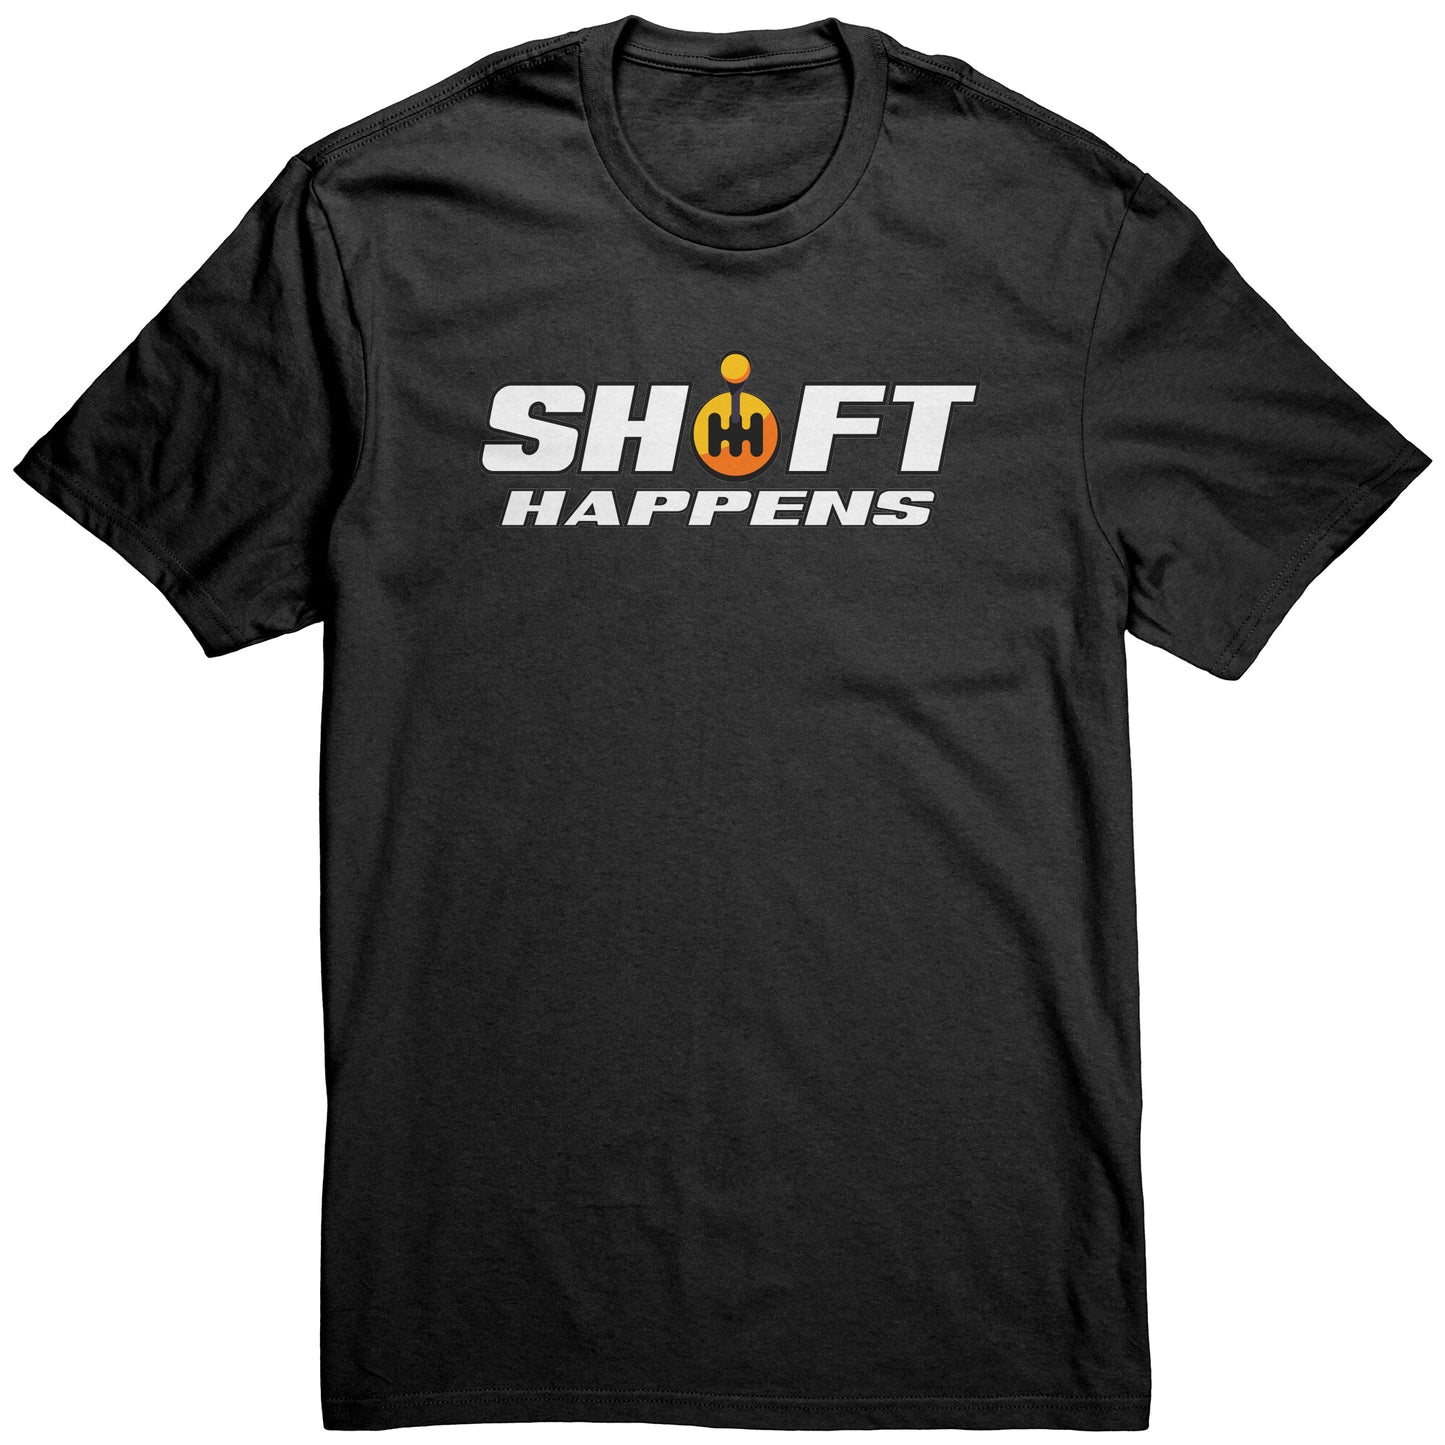 SHIFT HAPPENS MEN'S T-SHIRT